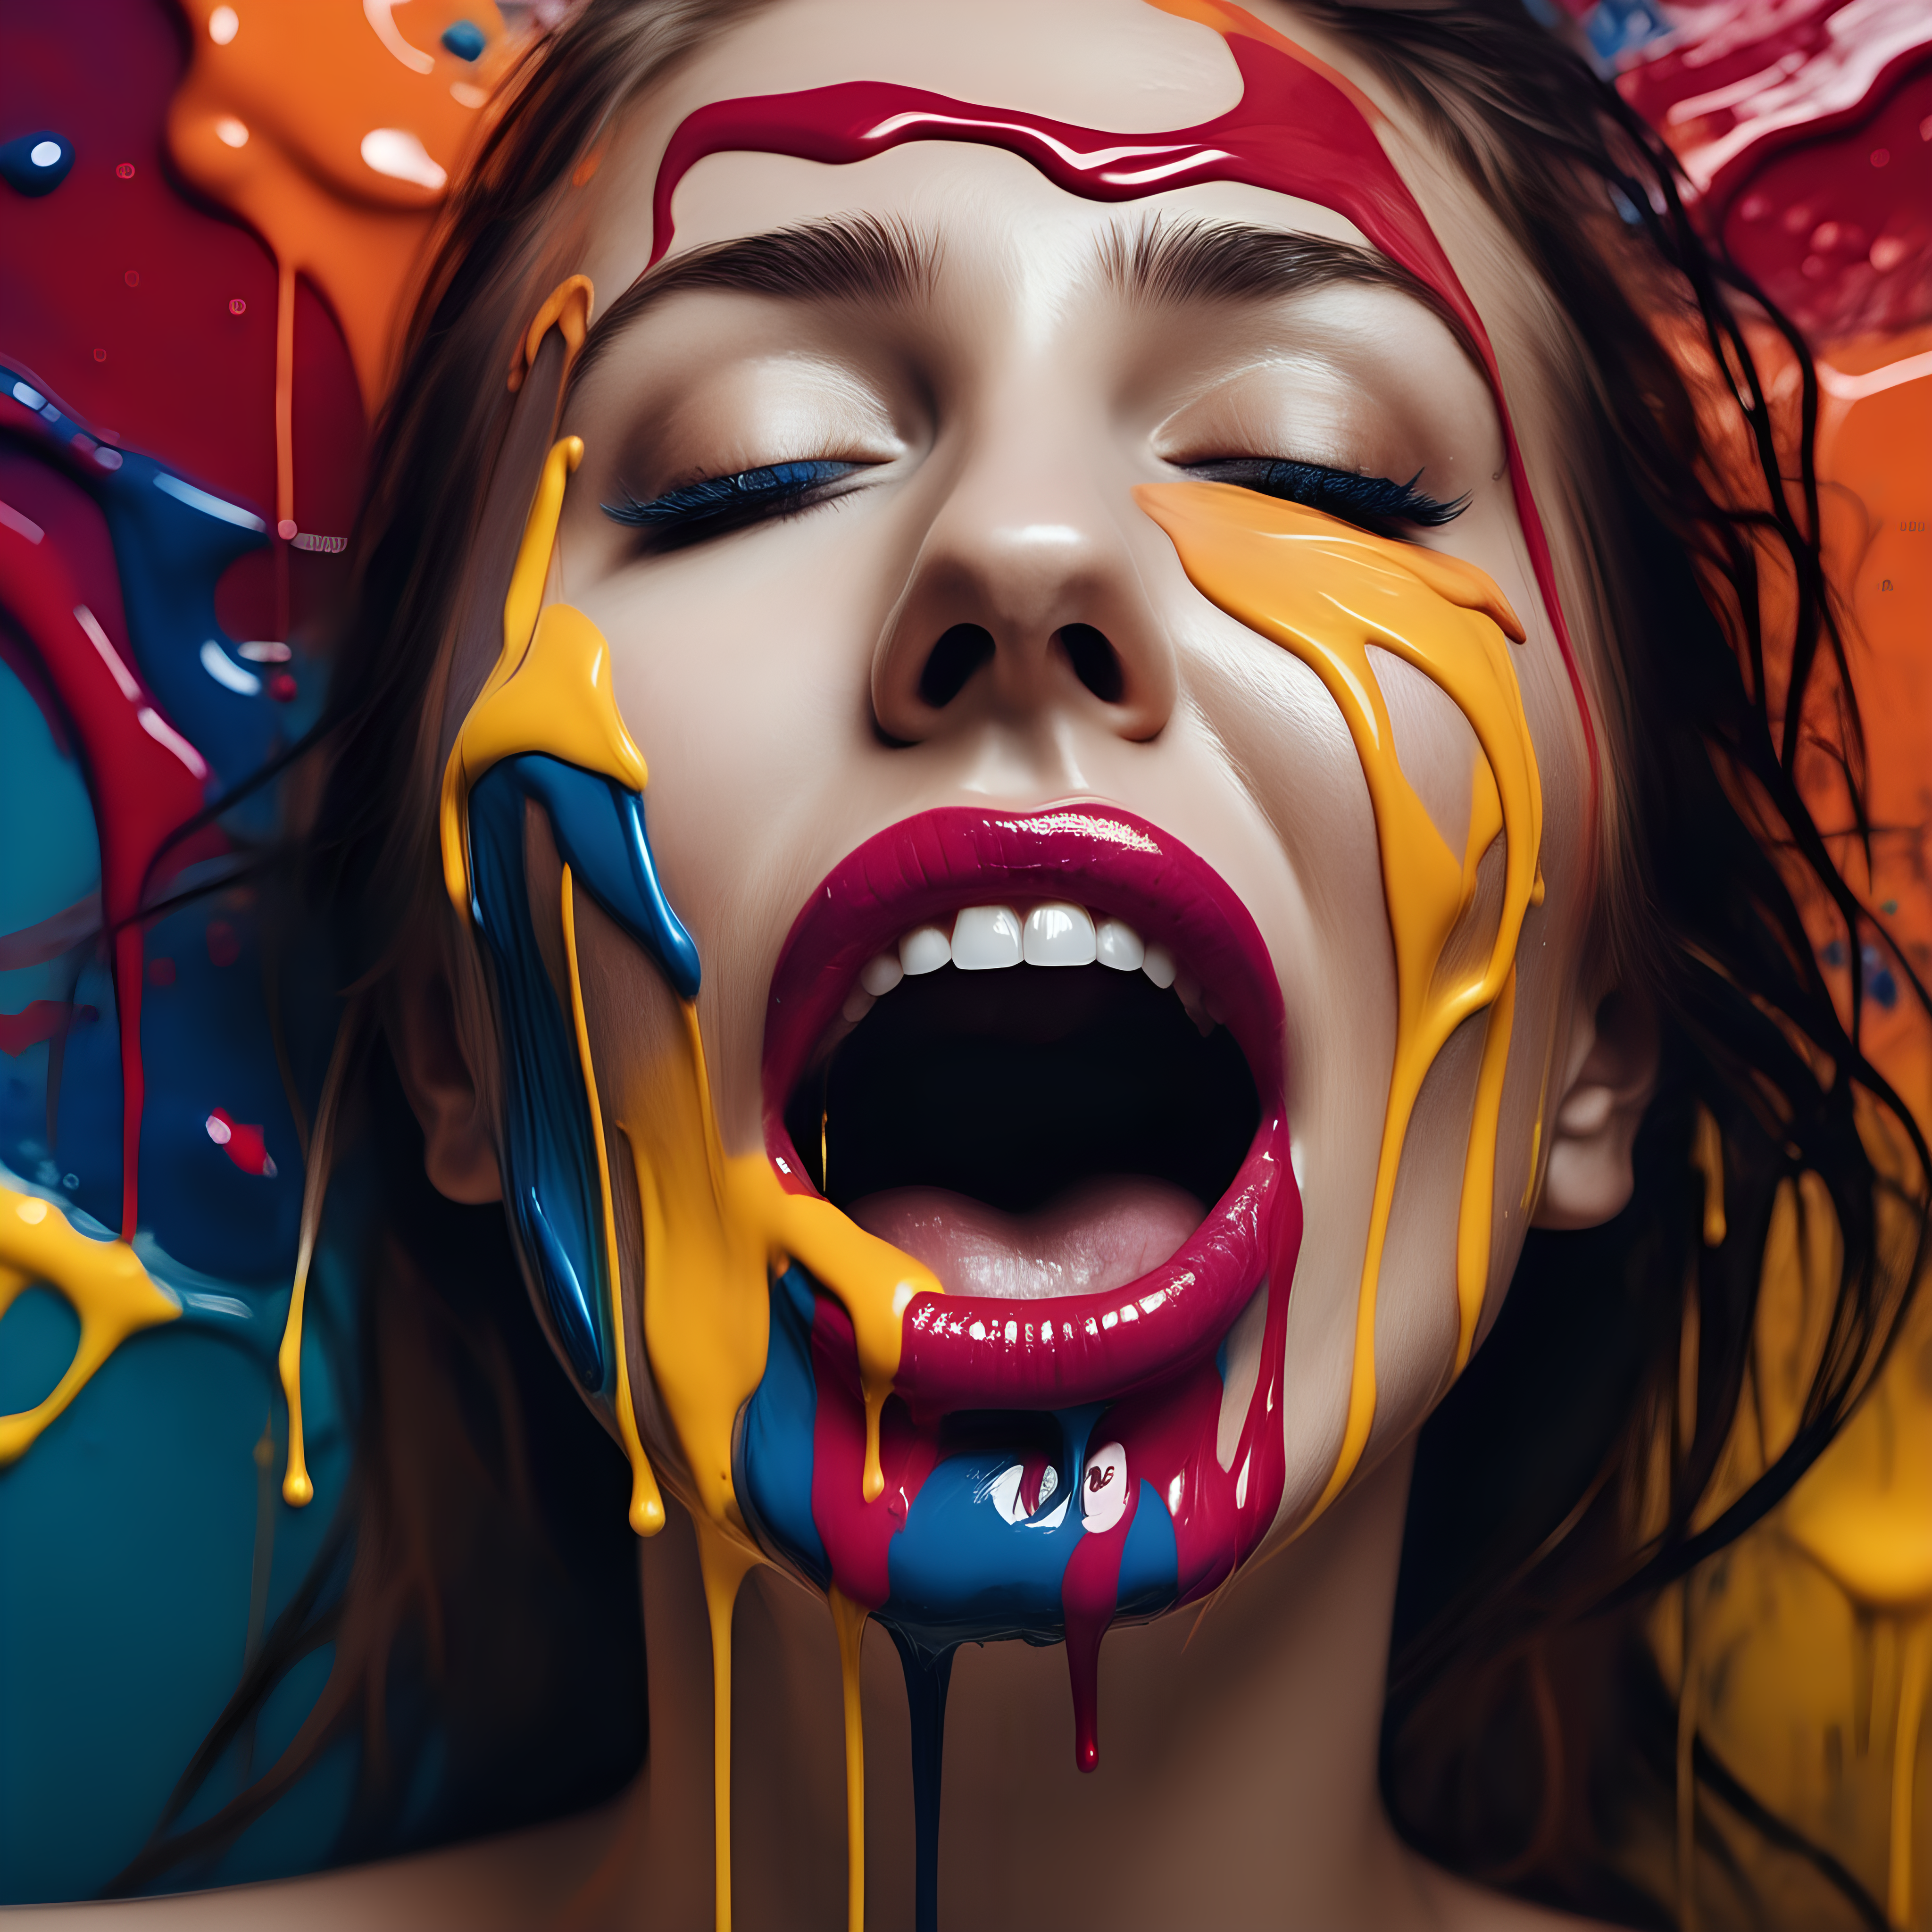 erstelle foto, abstraktes  kunstwerk einer frau in farbe getränkt es soll einen hauch von  erotisch sein lege den fokus aufd den mund nur er soll zu sehen sein 

